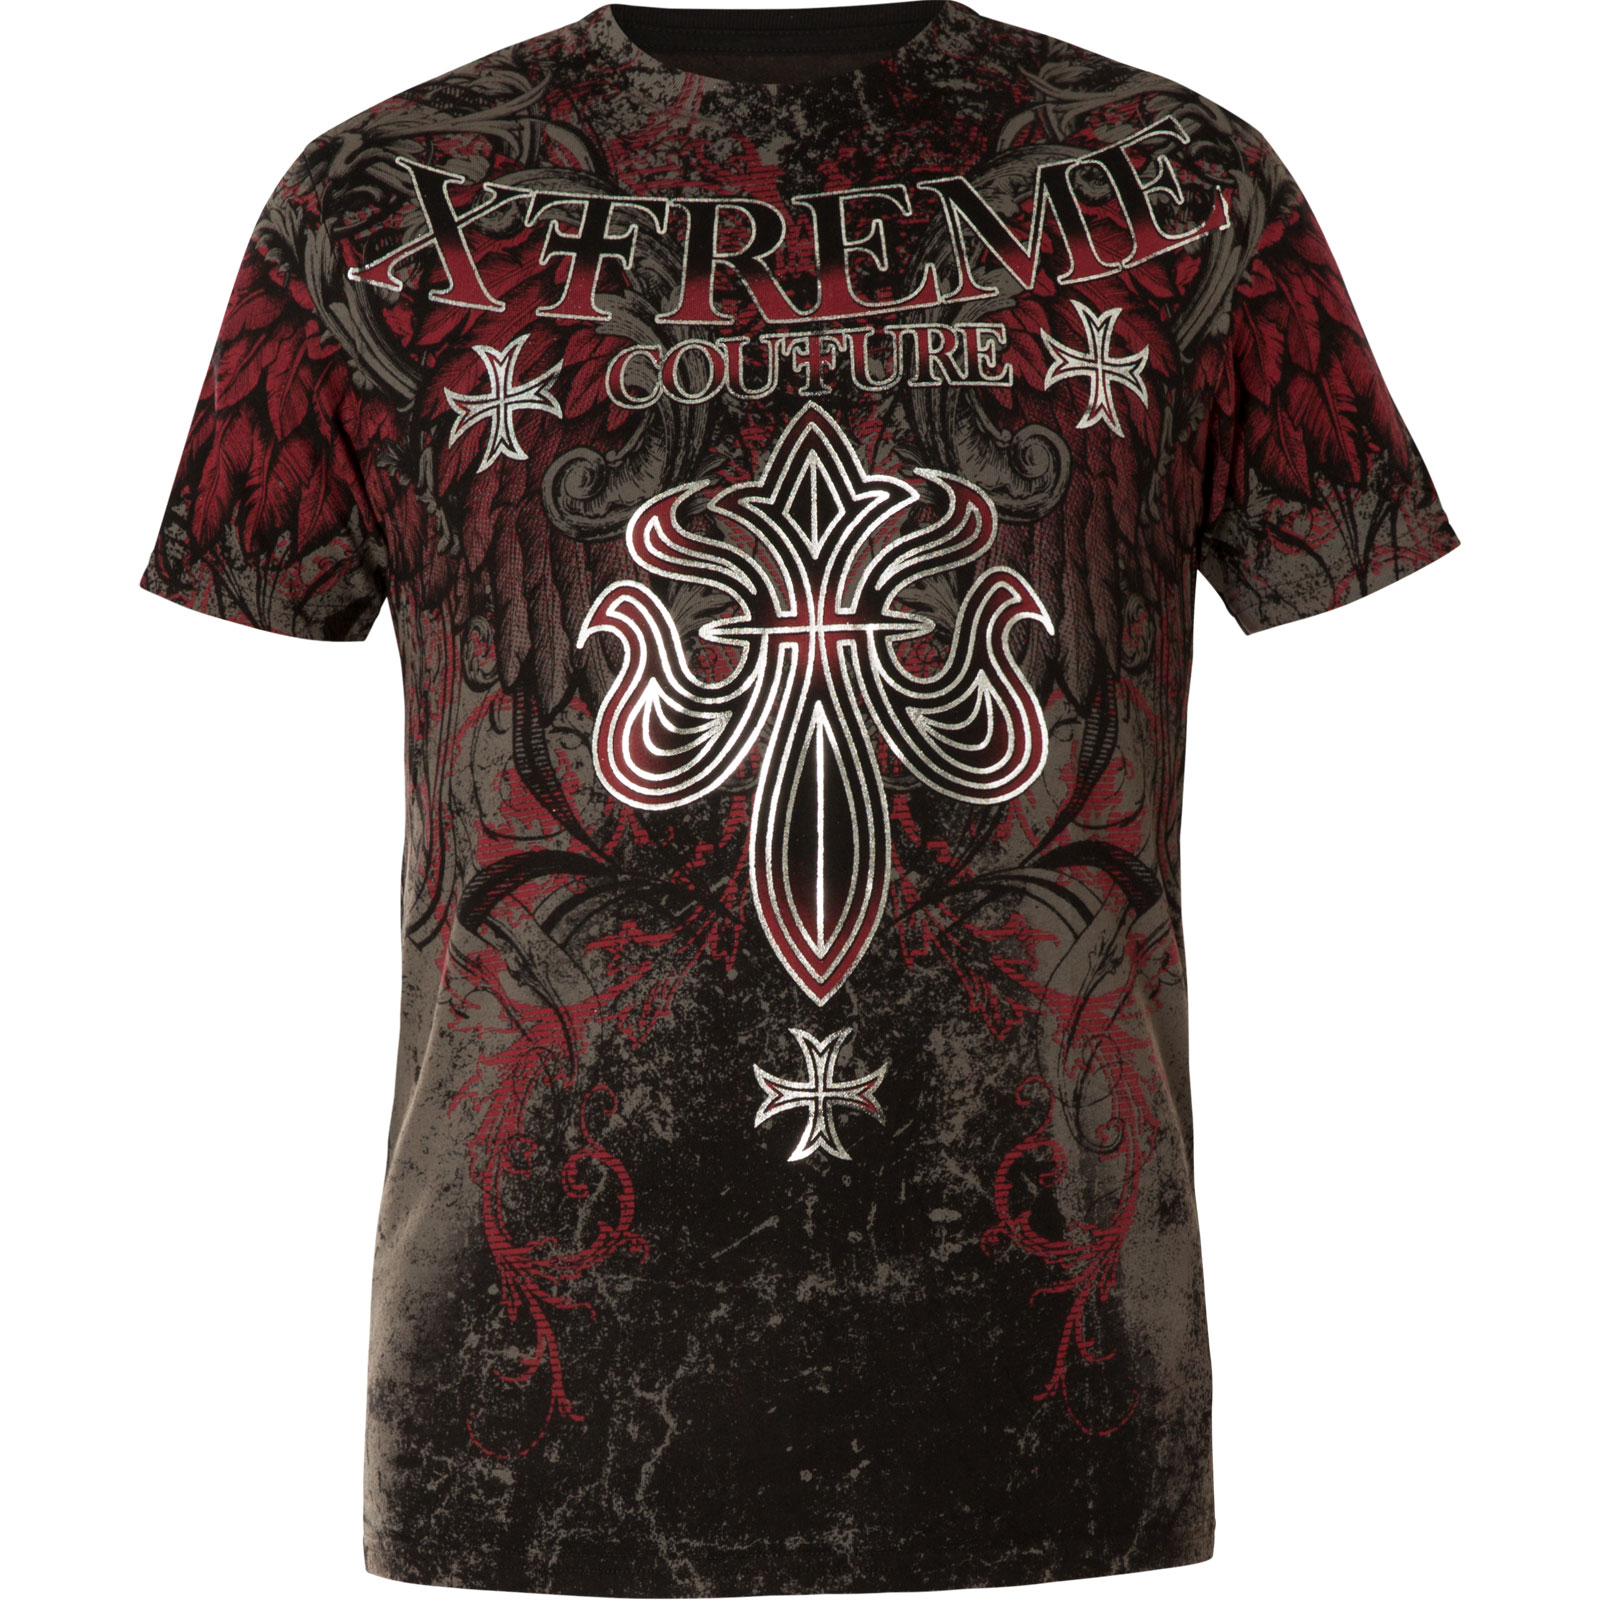 Xtreme Couture T- Shirt Bold Cipher print with a fleur de lis